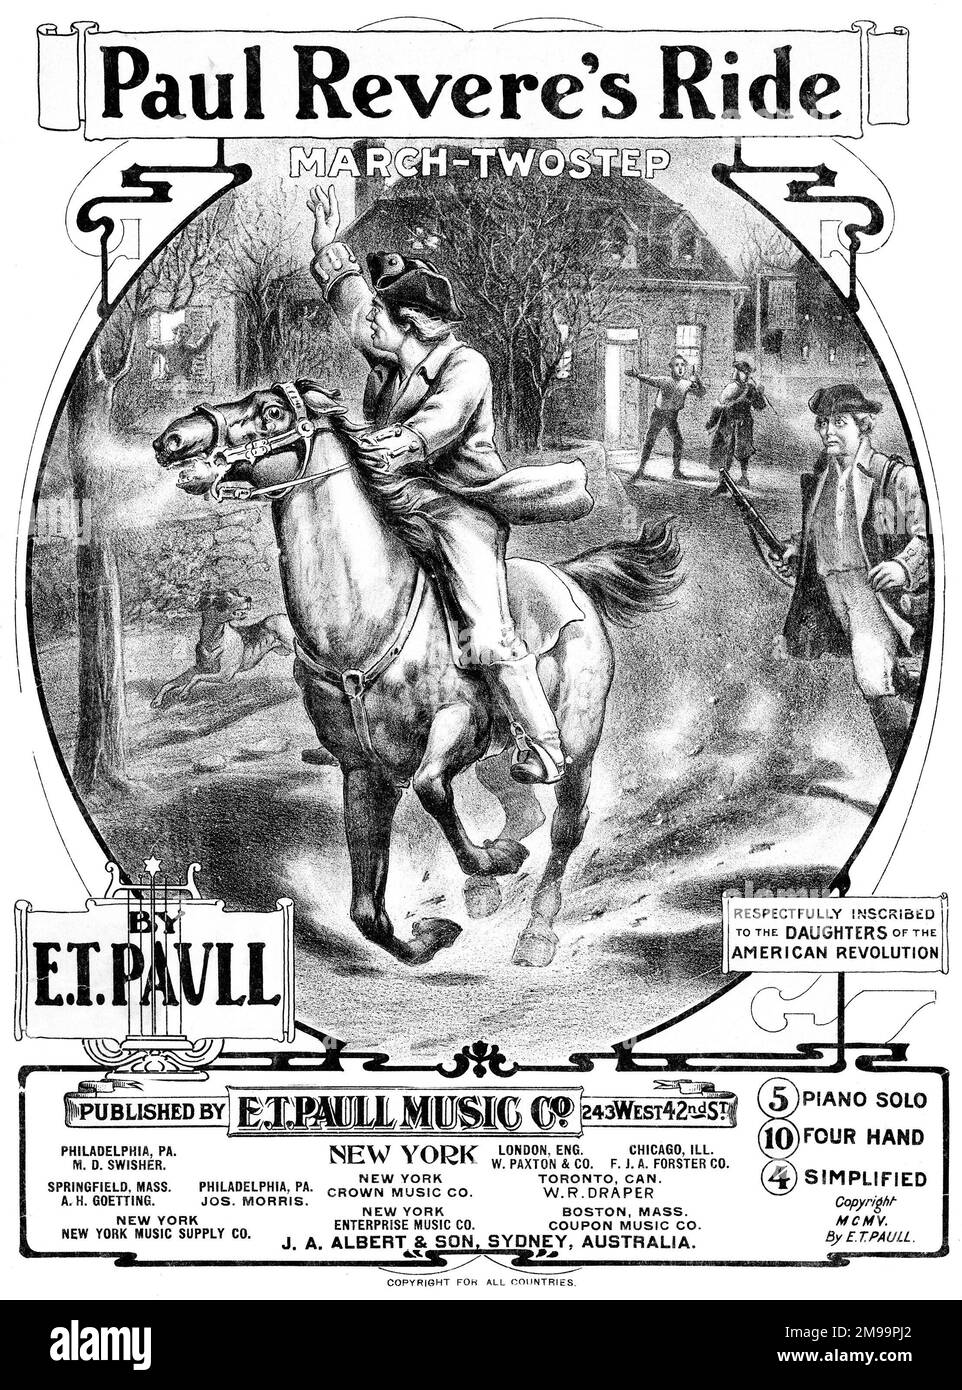 Couverture musicale, Paul Revere's Ride, March-TwoStep, par E T Paull, inscrit respectueusement aux filles de la Révolution américaine. Banque D'Images